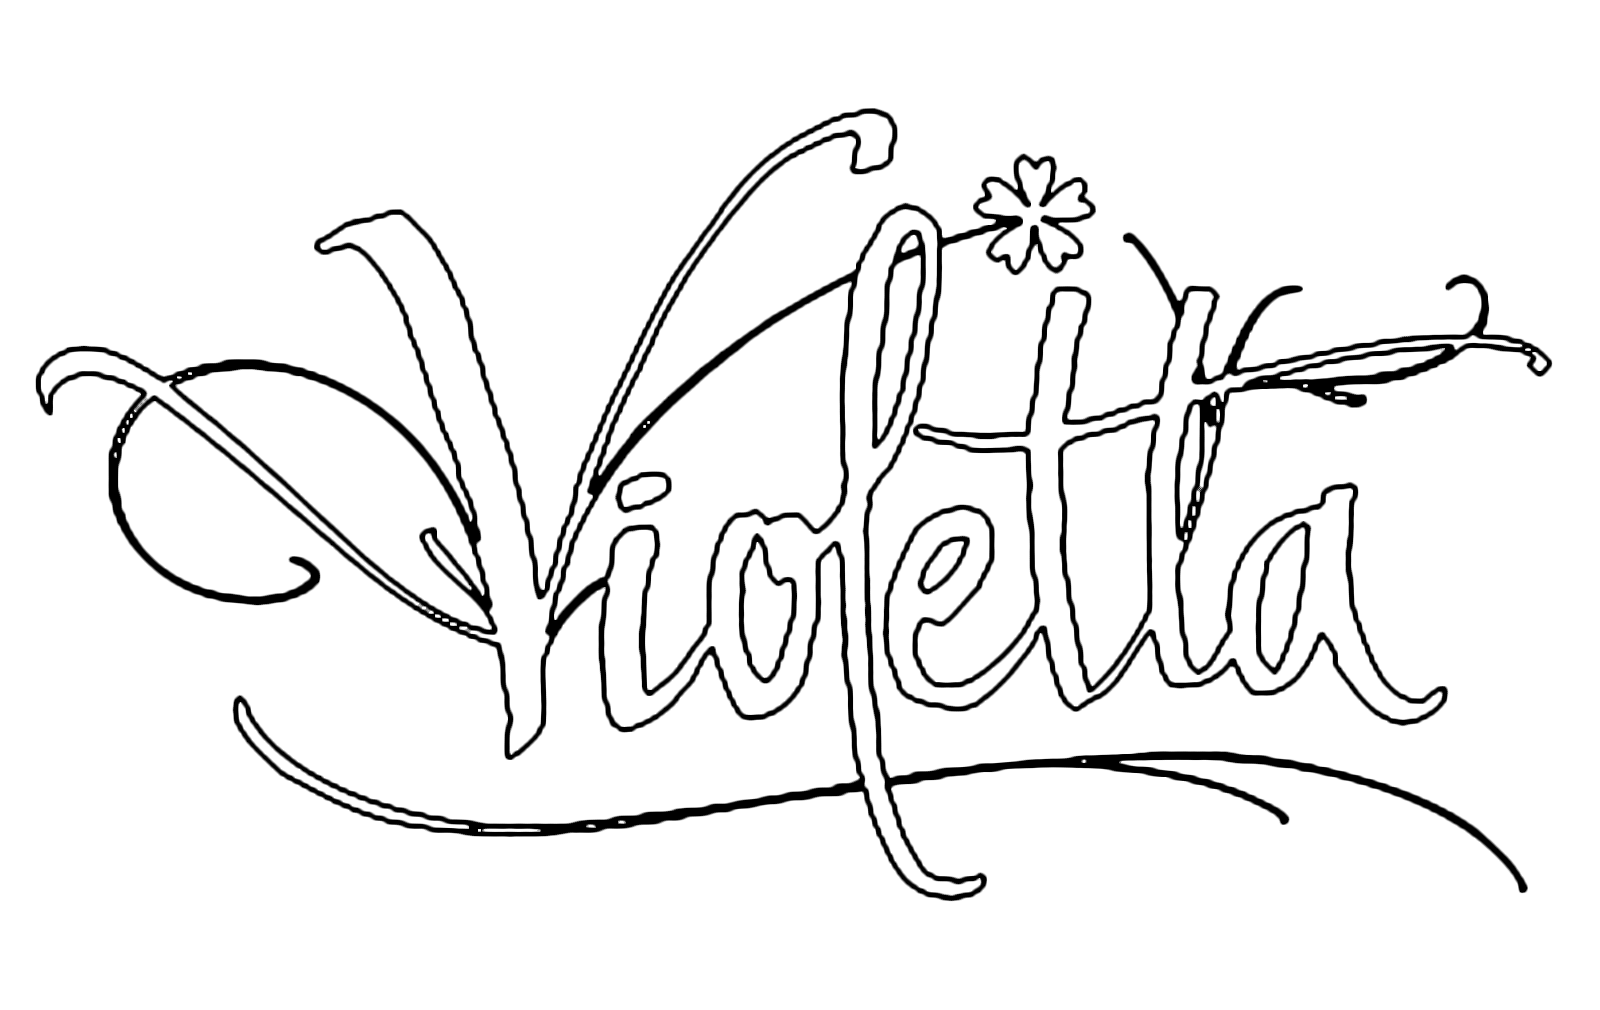 Violetta - La firma di Violetta